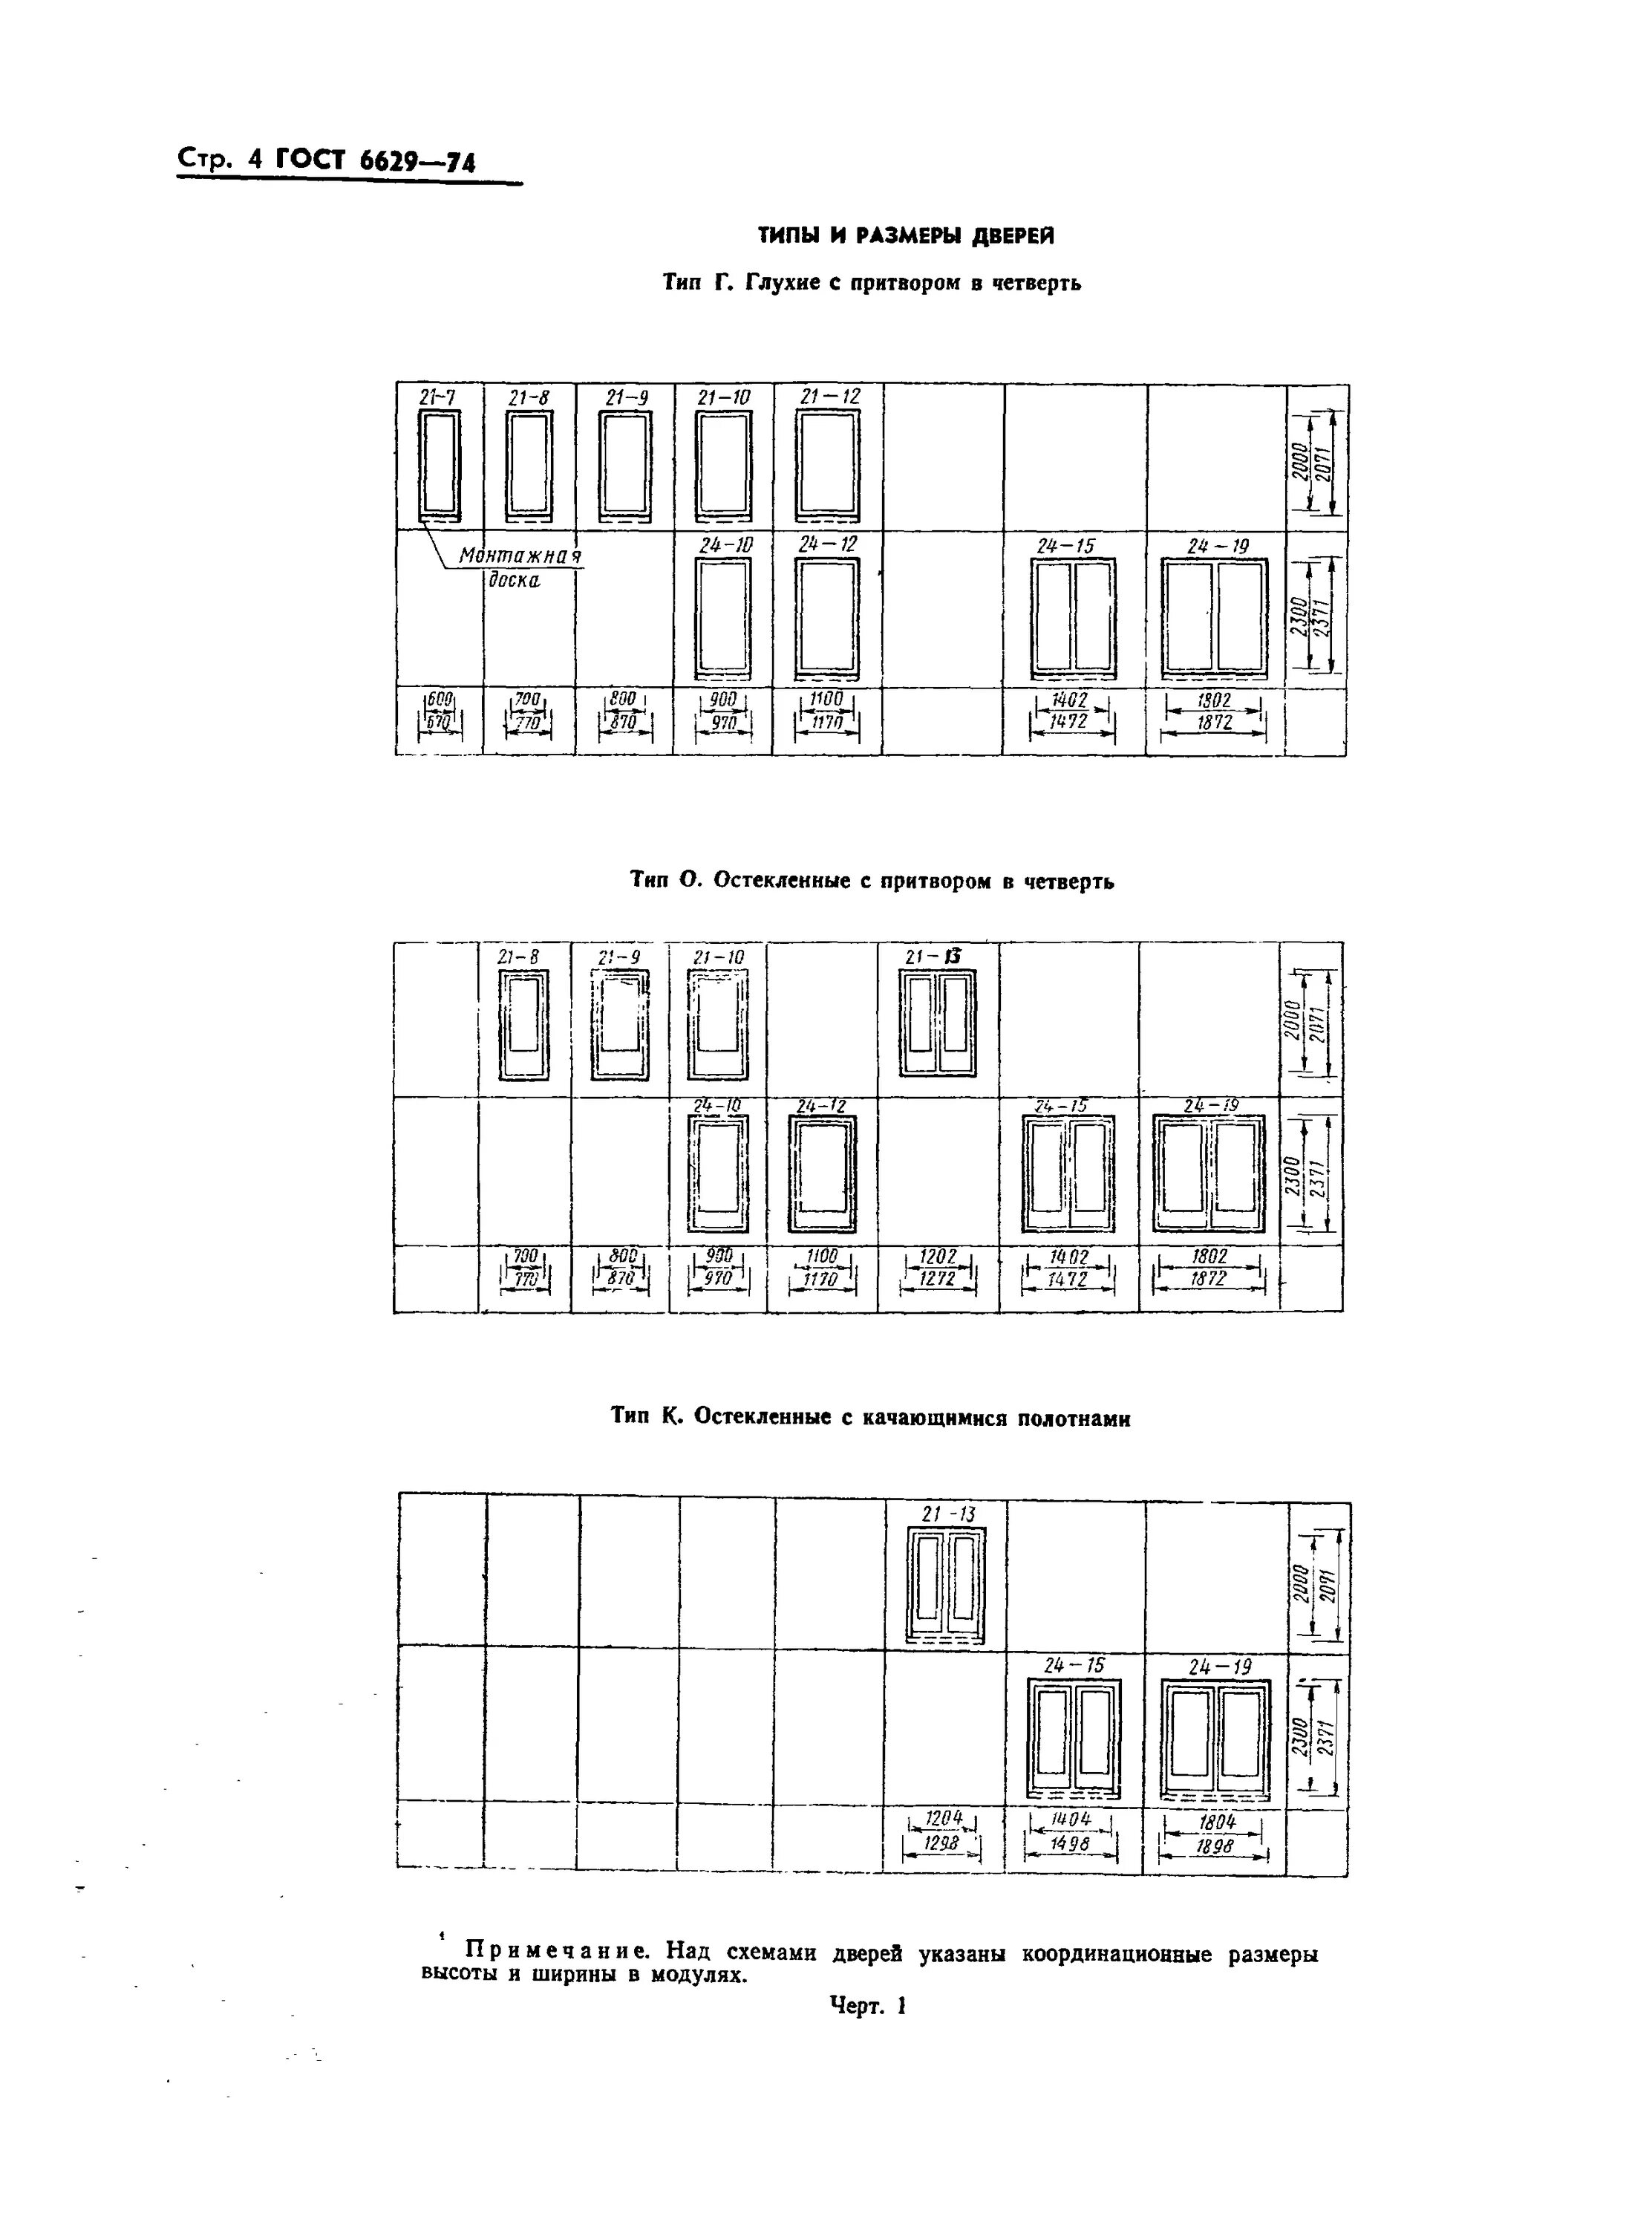 Гост размеры зданий. Двери ГОСТ 6629-74. Двери ГОСТ 23747-2015. ГОСТ окна деревянные для жилых и общественных зданий ГОСТ. Размеры дверных проемов по ГОСТУ.